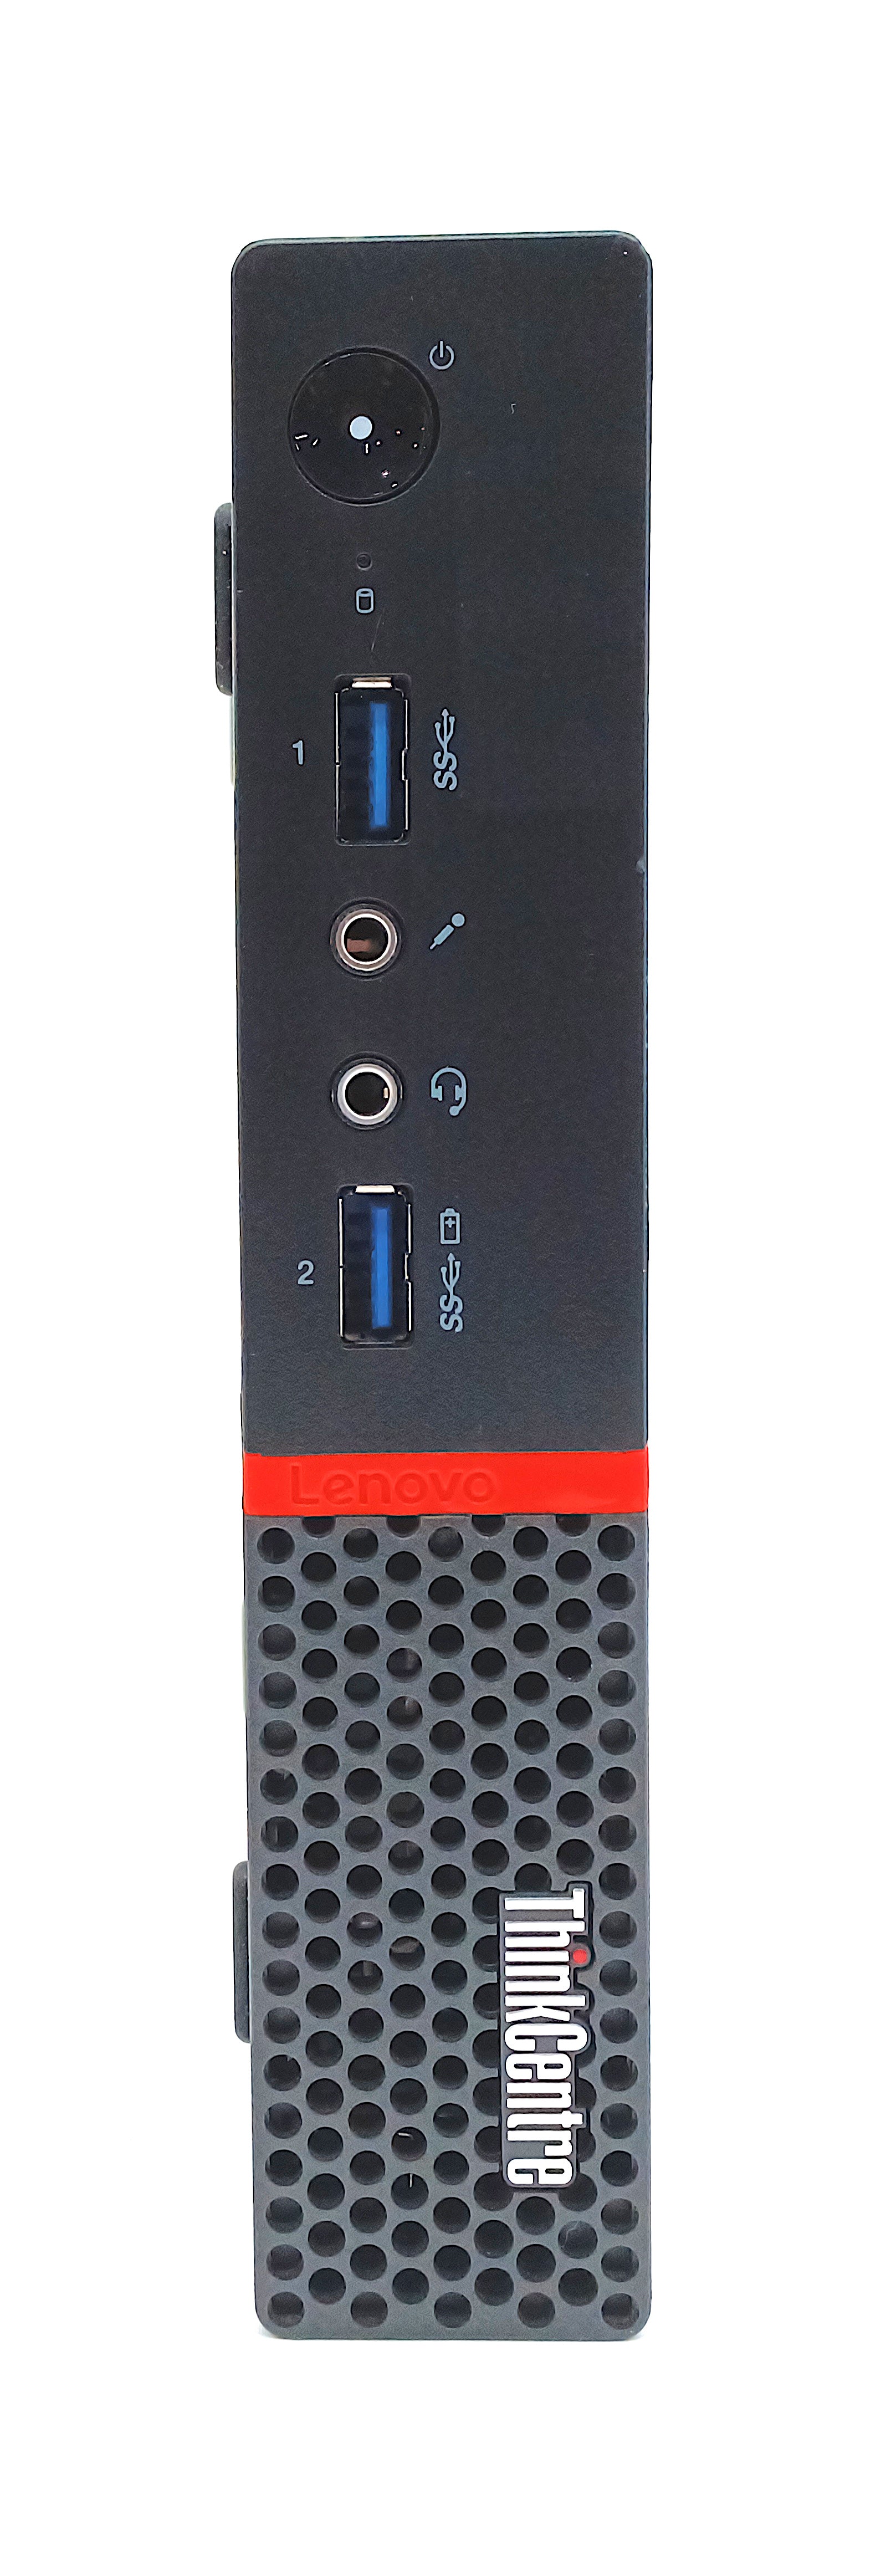 Lenovo ThinkCentre M700 Micro PC, Core i7 6th Gen, 8GB RAM, 128GB SSD